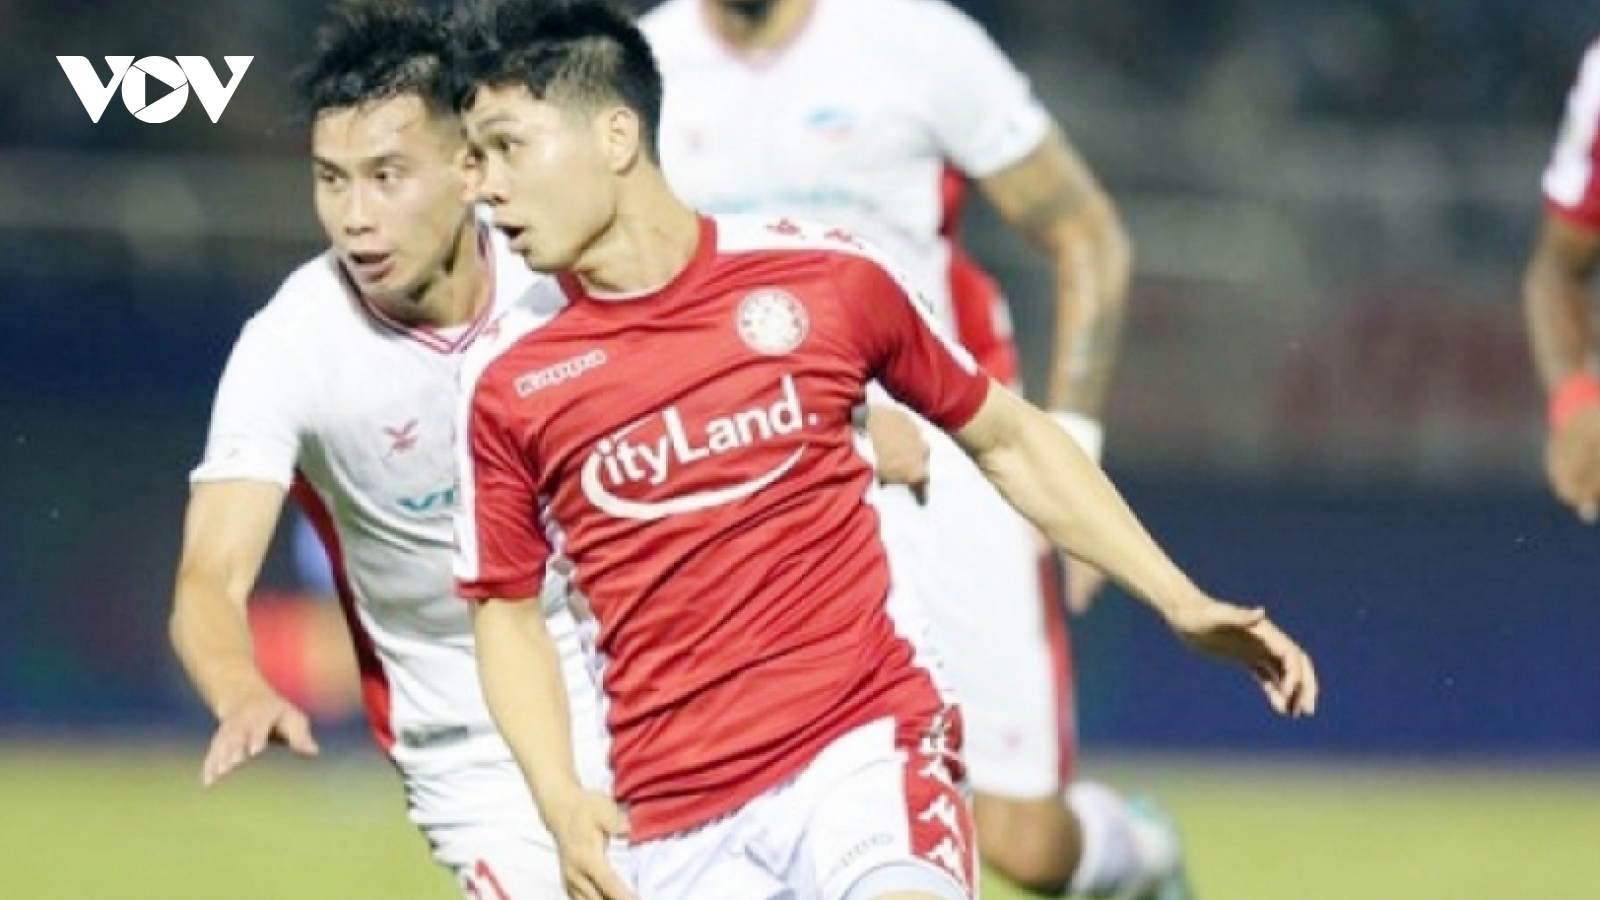 Cong Phuong finishes V.League 1 season as top local scorer